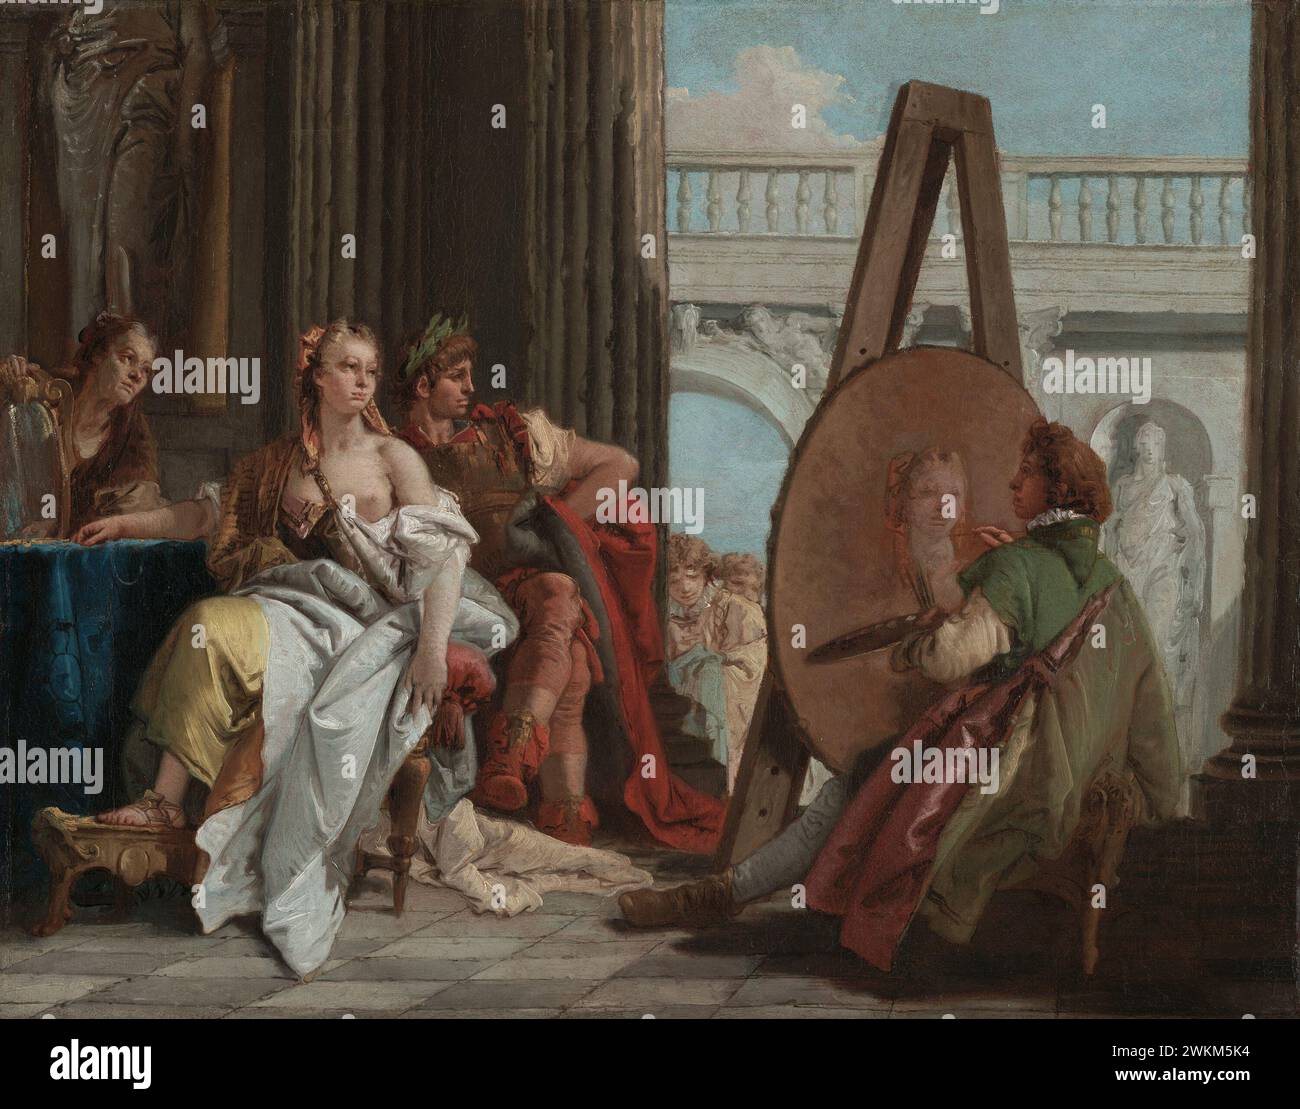 Alexandre le Grand et Campaspe dans l'atelier d'Apelles ; Giovanni Battista Tiepolo (italien, 1696 - 1770) ; Italie ; environ 1740 ; huile sur toile; 42,5 × 54 cm (16 3/4 × 21 1/4 po) ; 2000,6 Banque D'Images